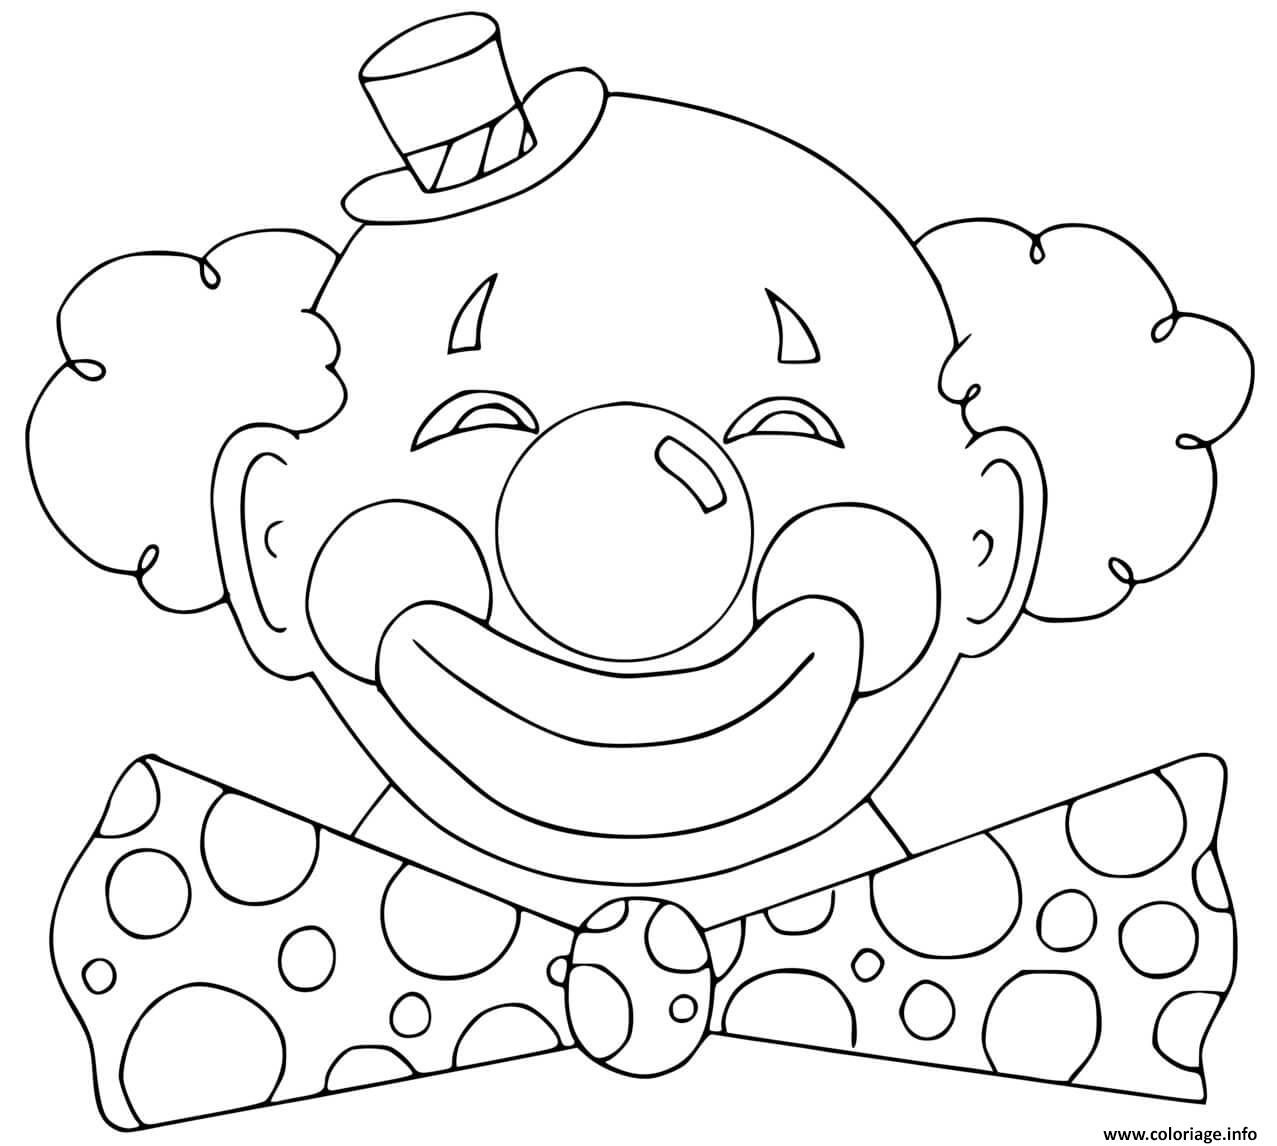 Маски на 1 апреля распечатать. Клоун раскраска. Лицо клоуна раскраска. Веселый клоун раскраска. Клоун раскраска для детей.